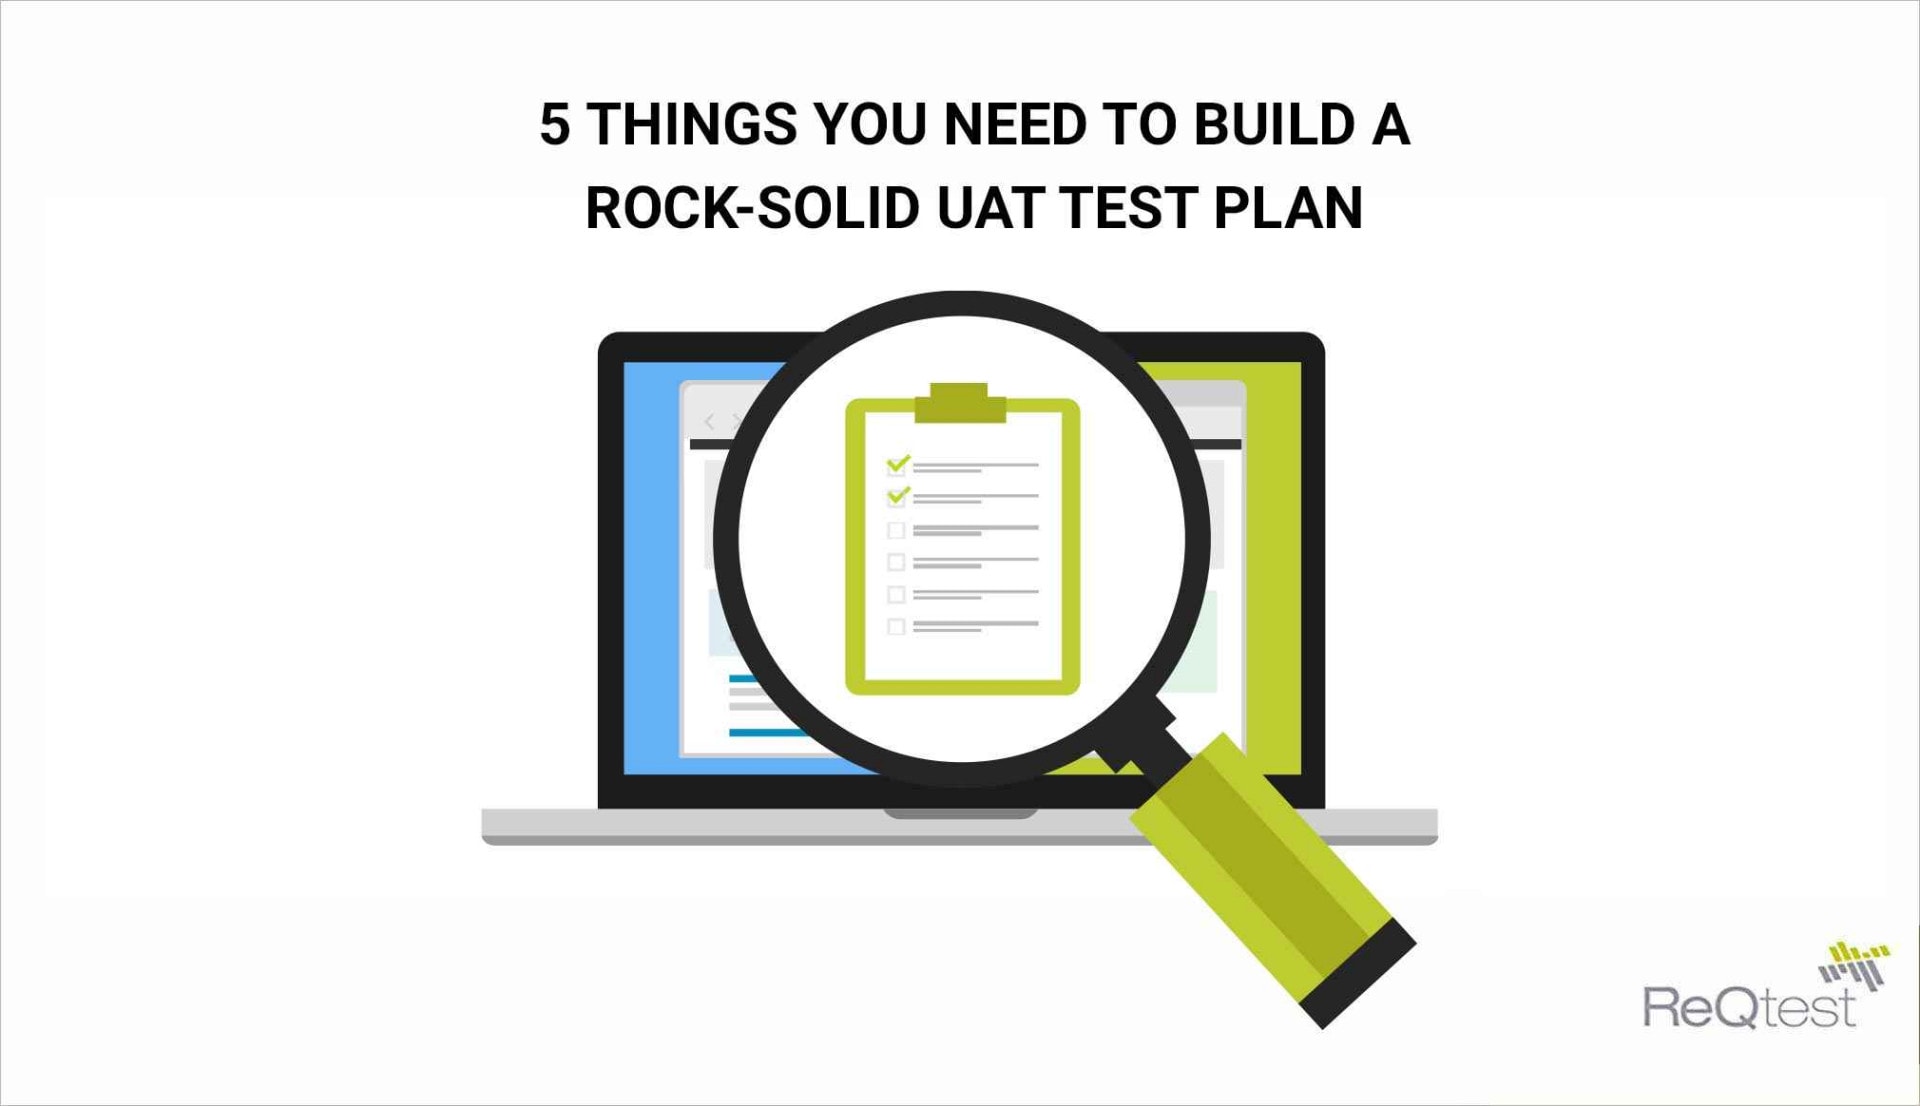 UAT test plan